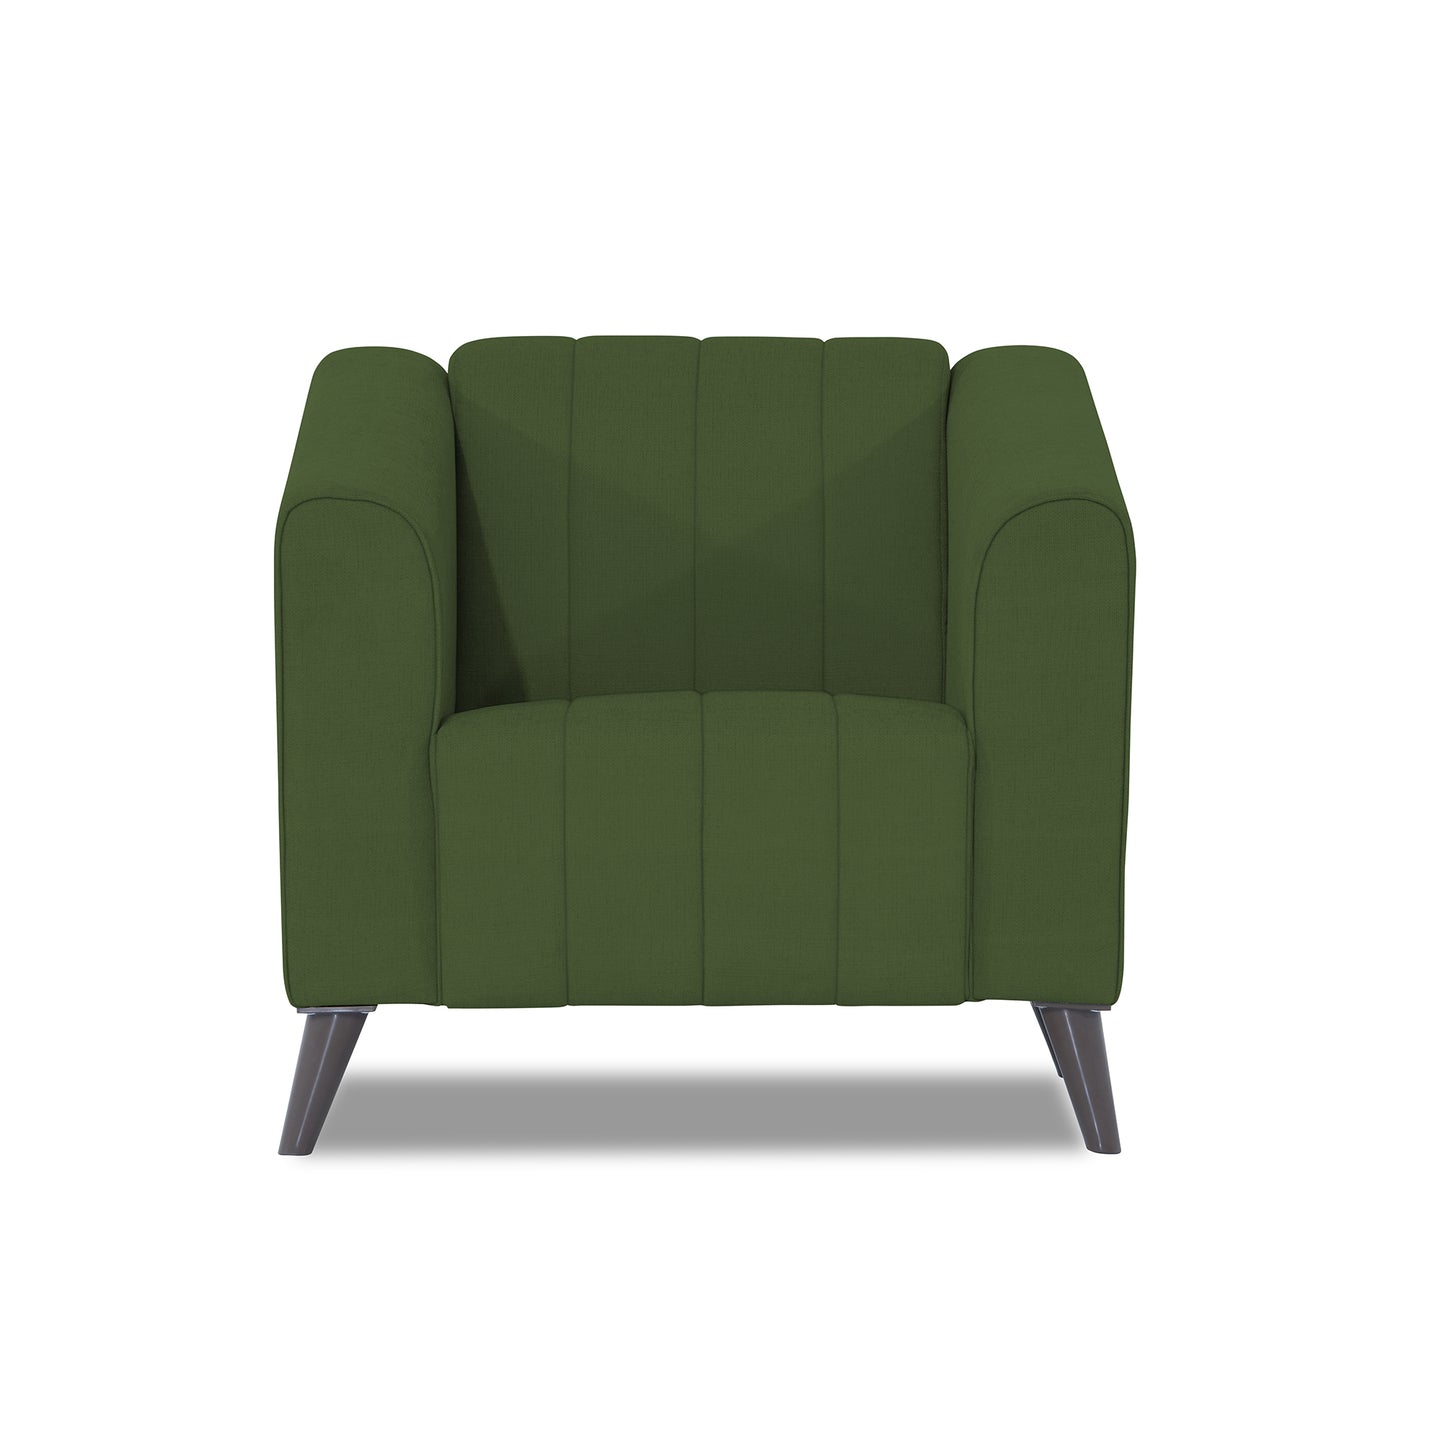 Adorn India Premium Laurel 1 Seater Sofa (Green)